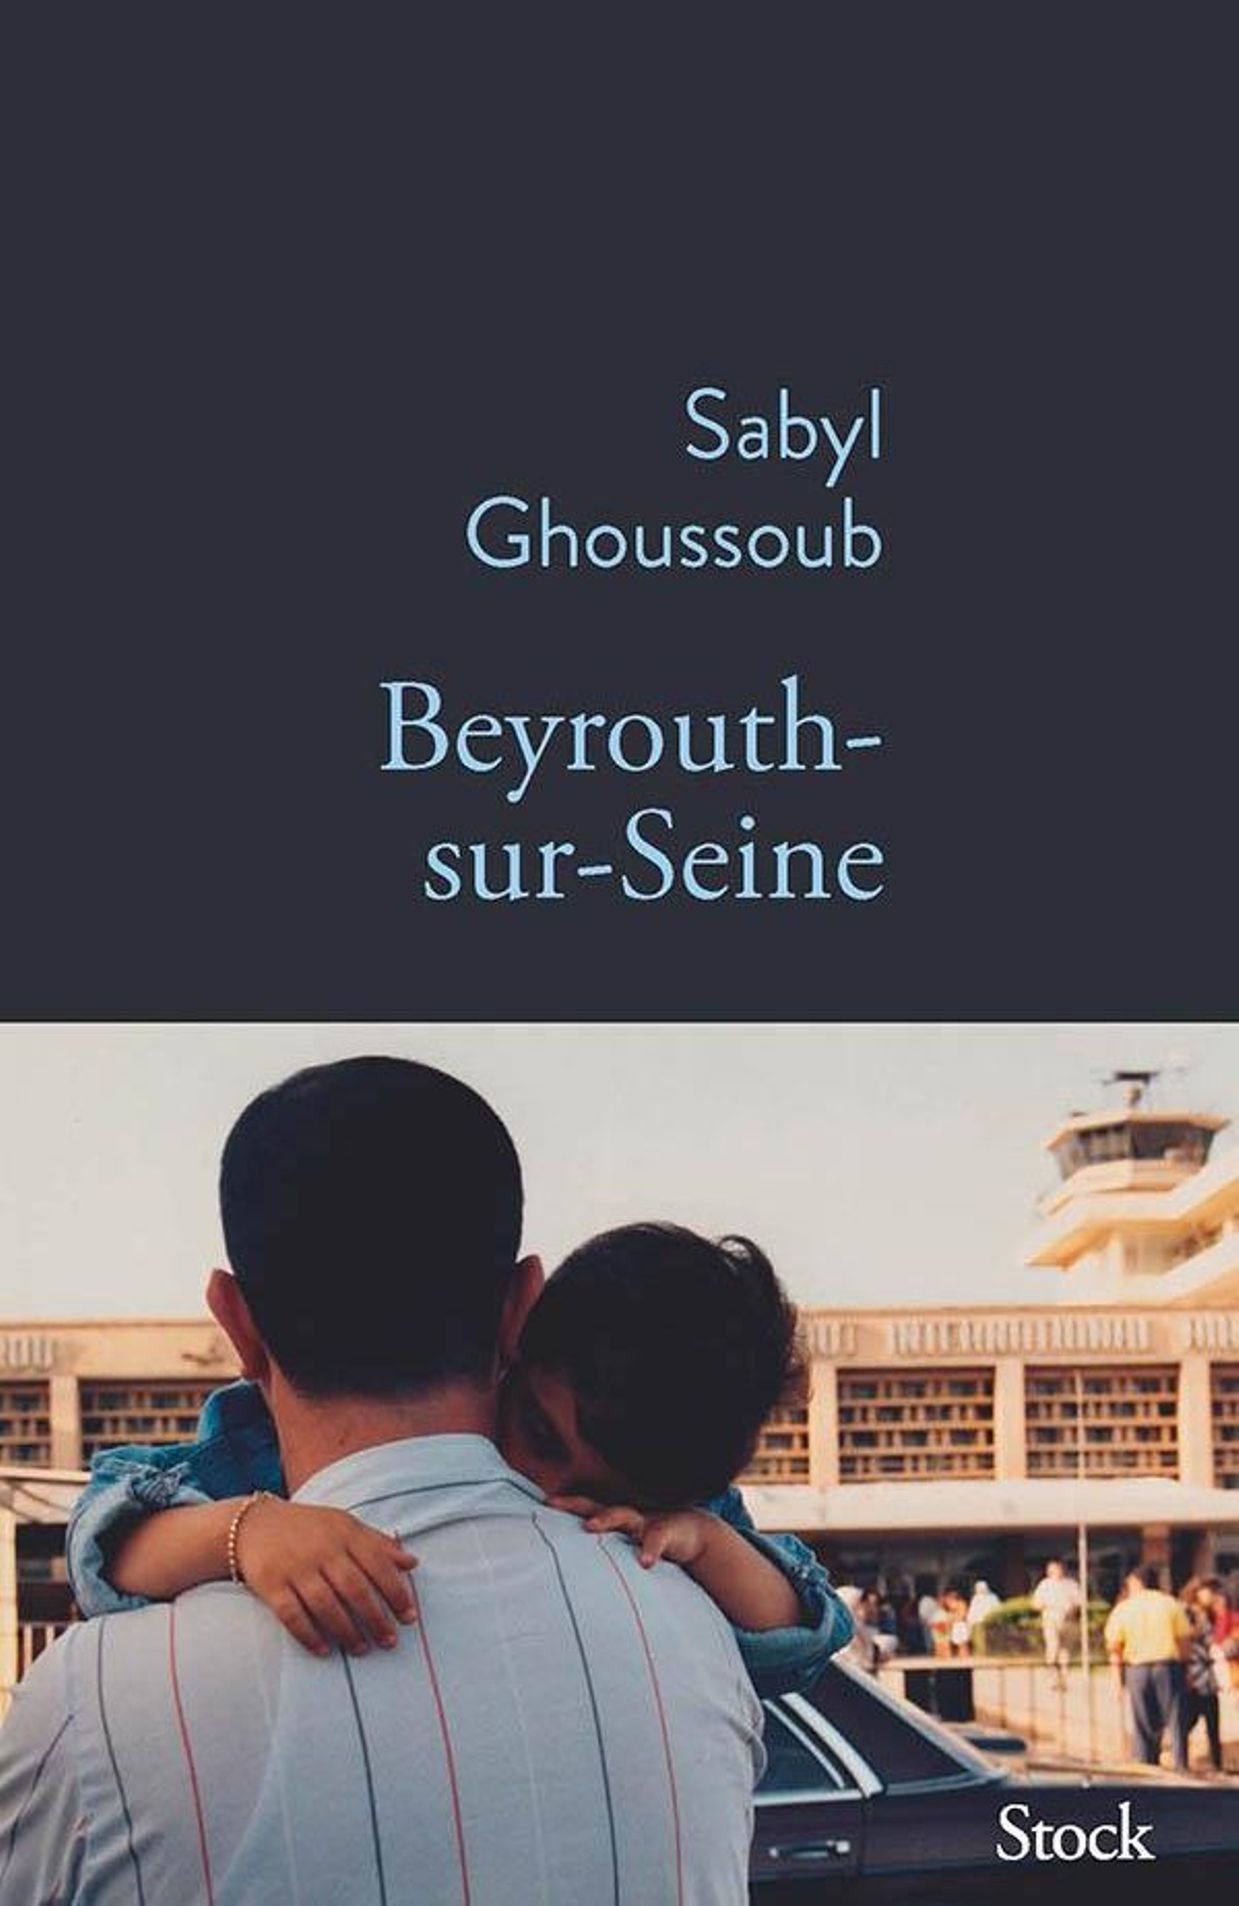 Le Goncourt des Lycéens 2022 va à l'auteur Sabyl Ghoussoub pour "Beyrouth-sur-Seine"